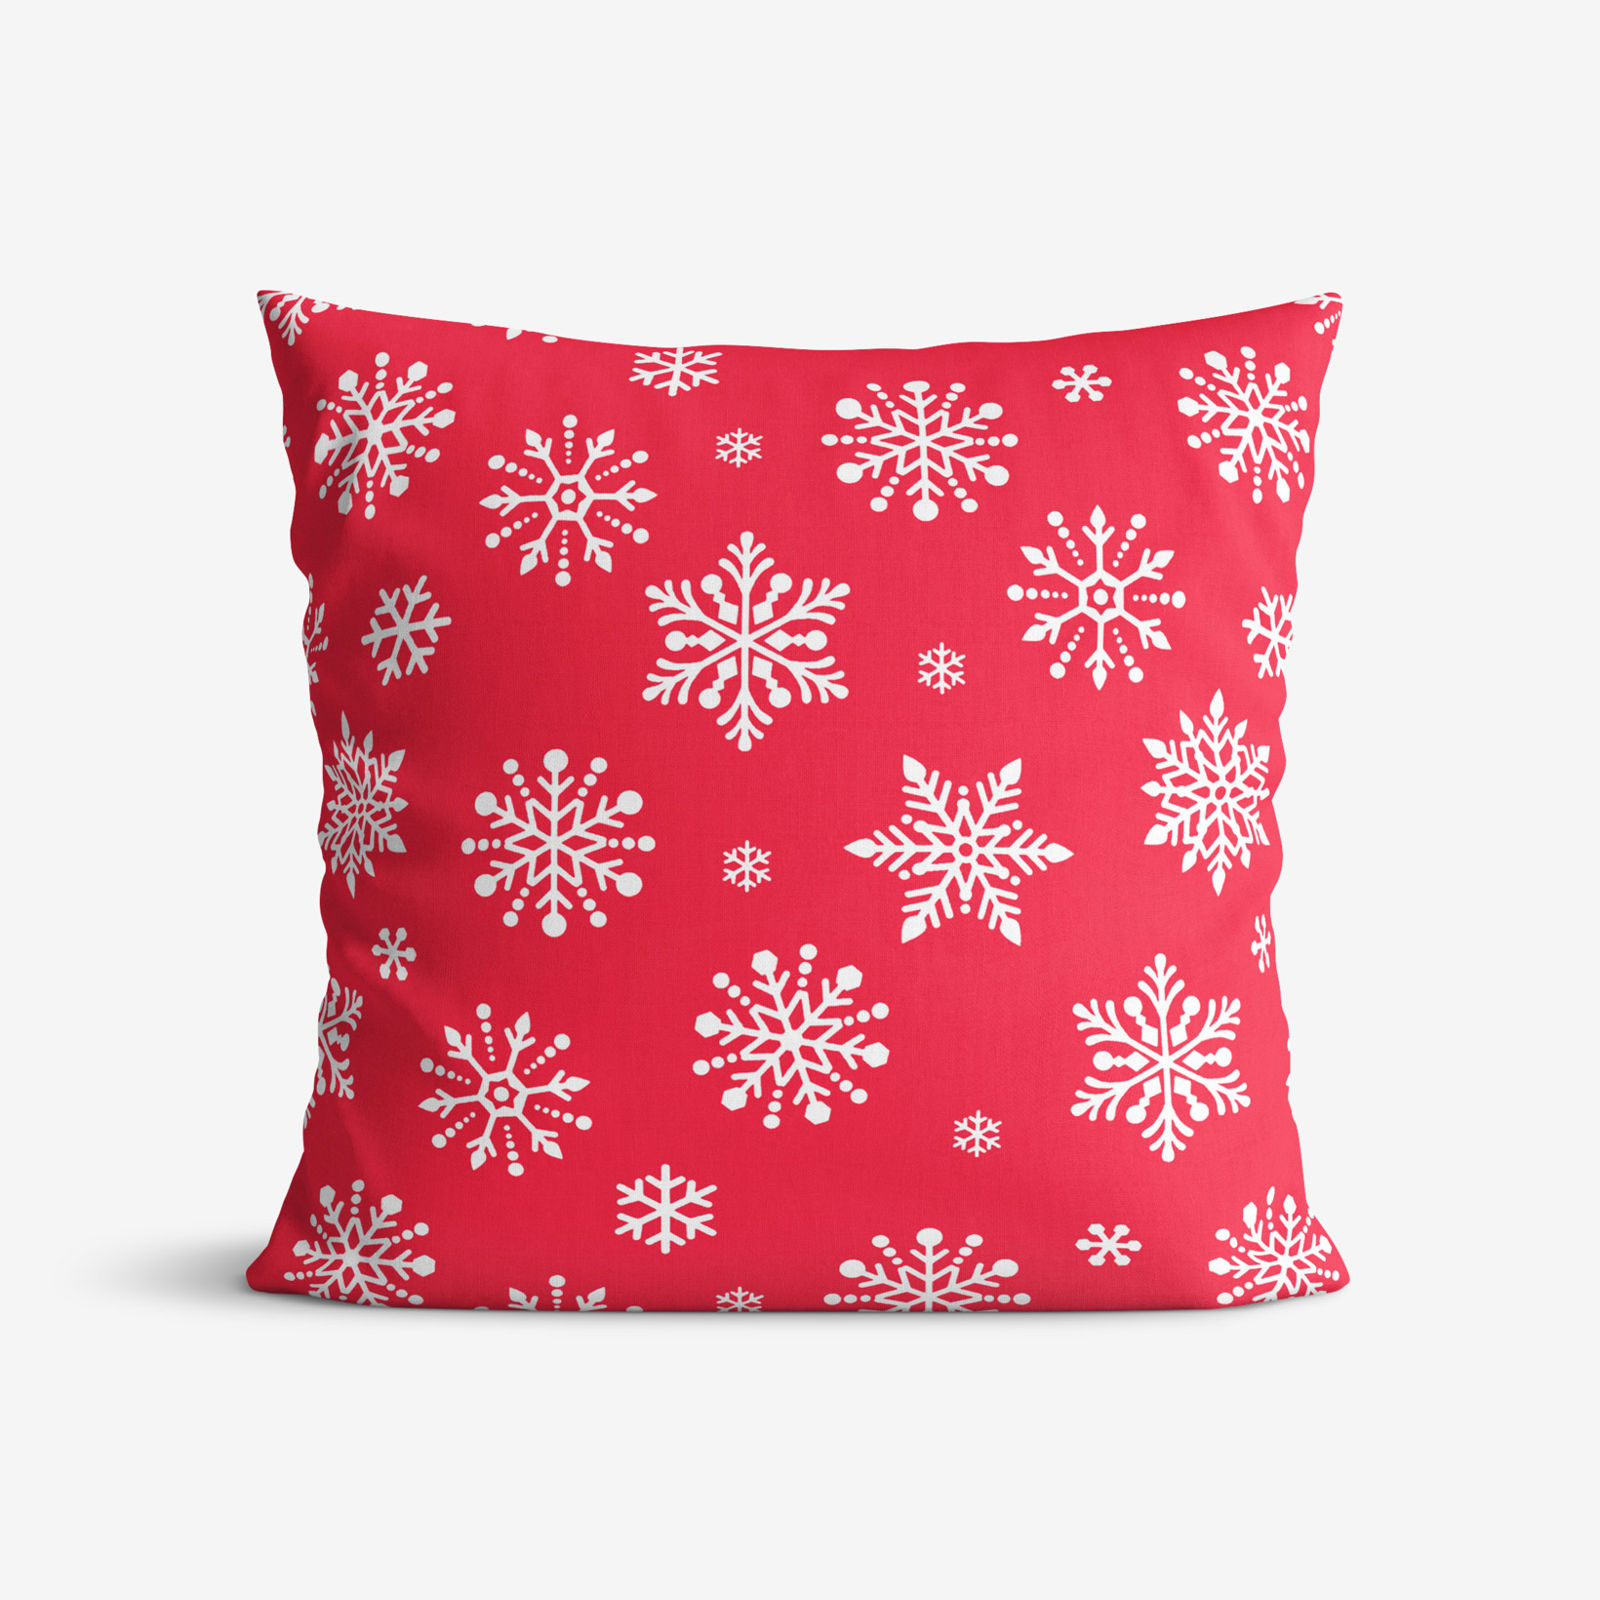 Poszewka na poduszkę bawełniana - płatki śniegu na jaskrawej czerwieni